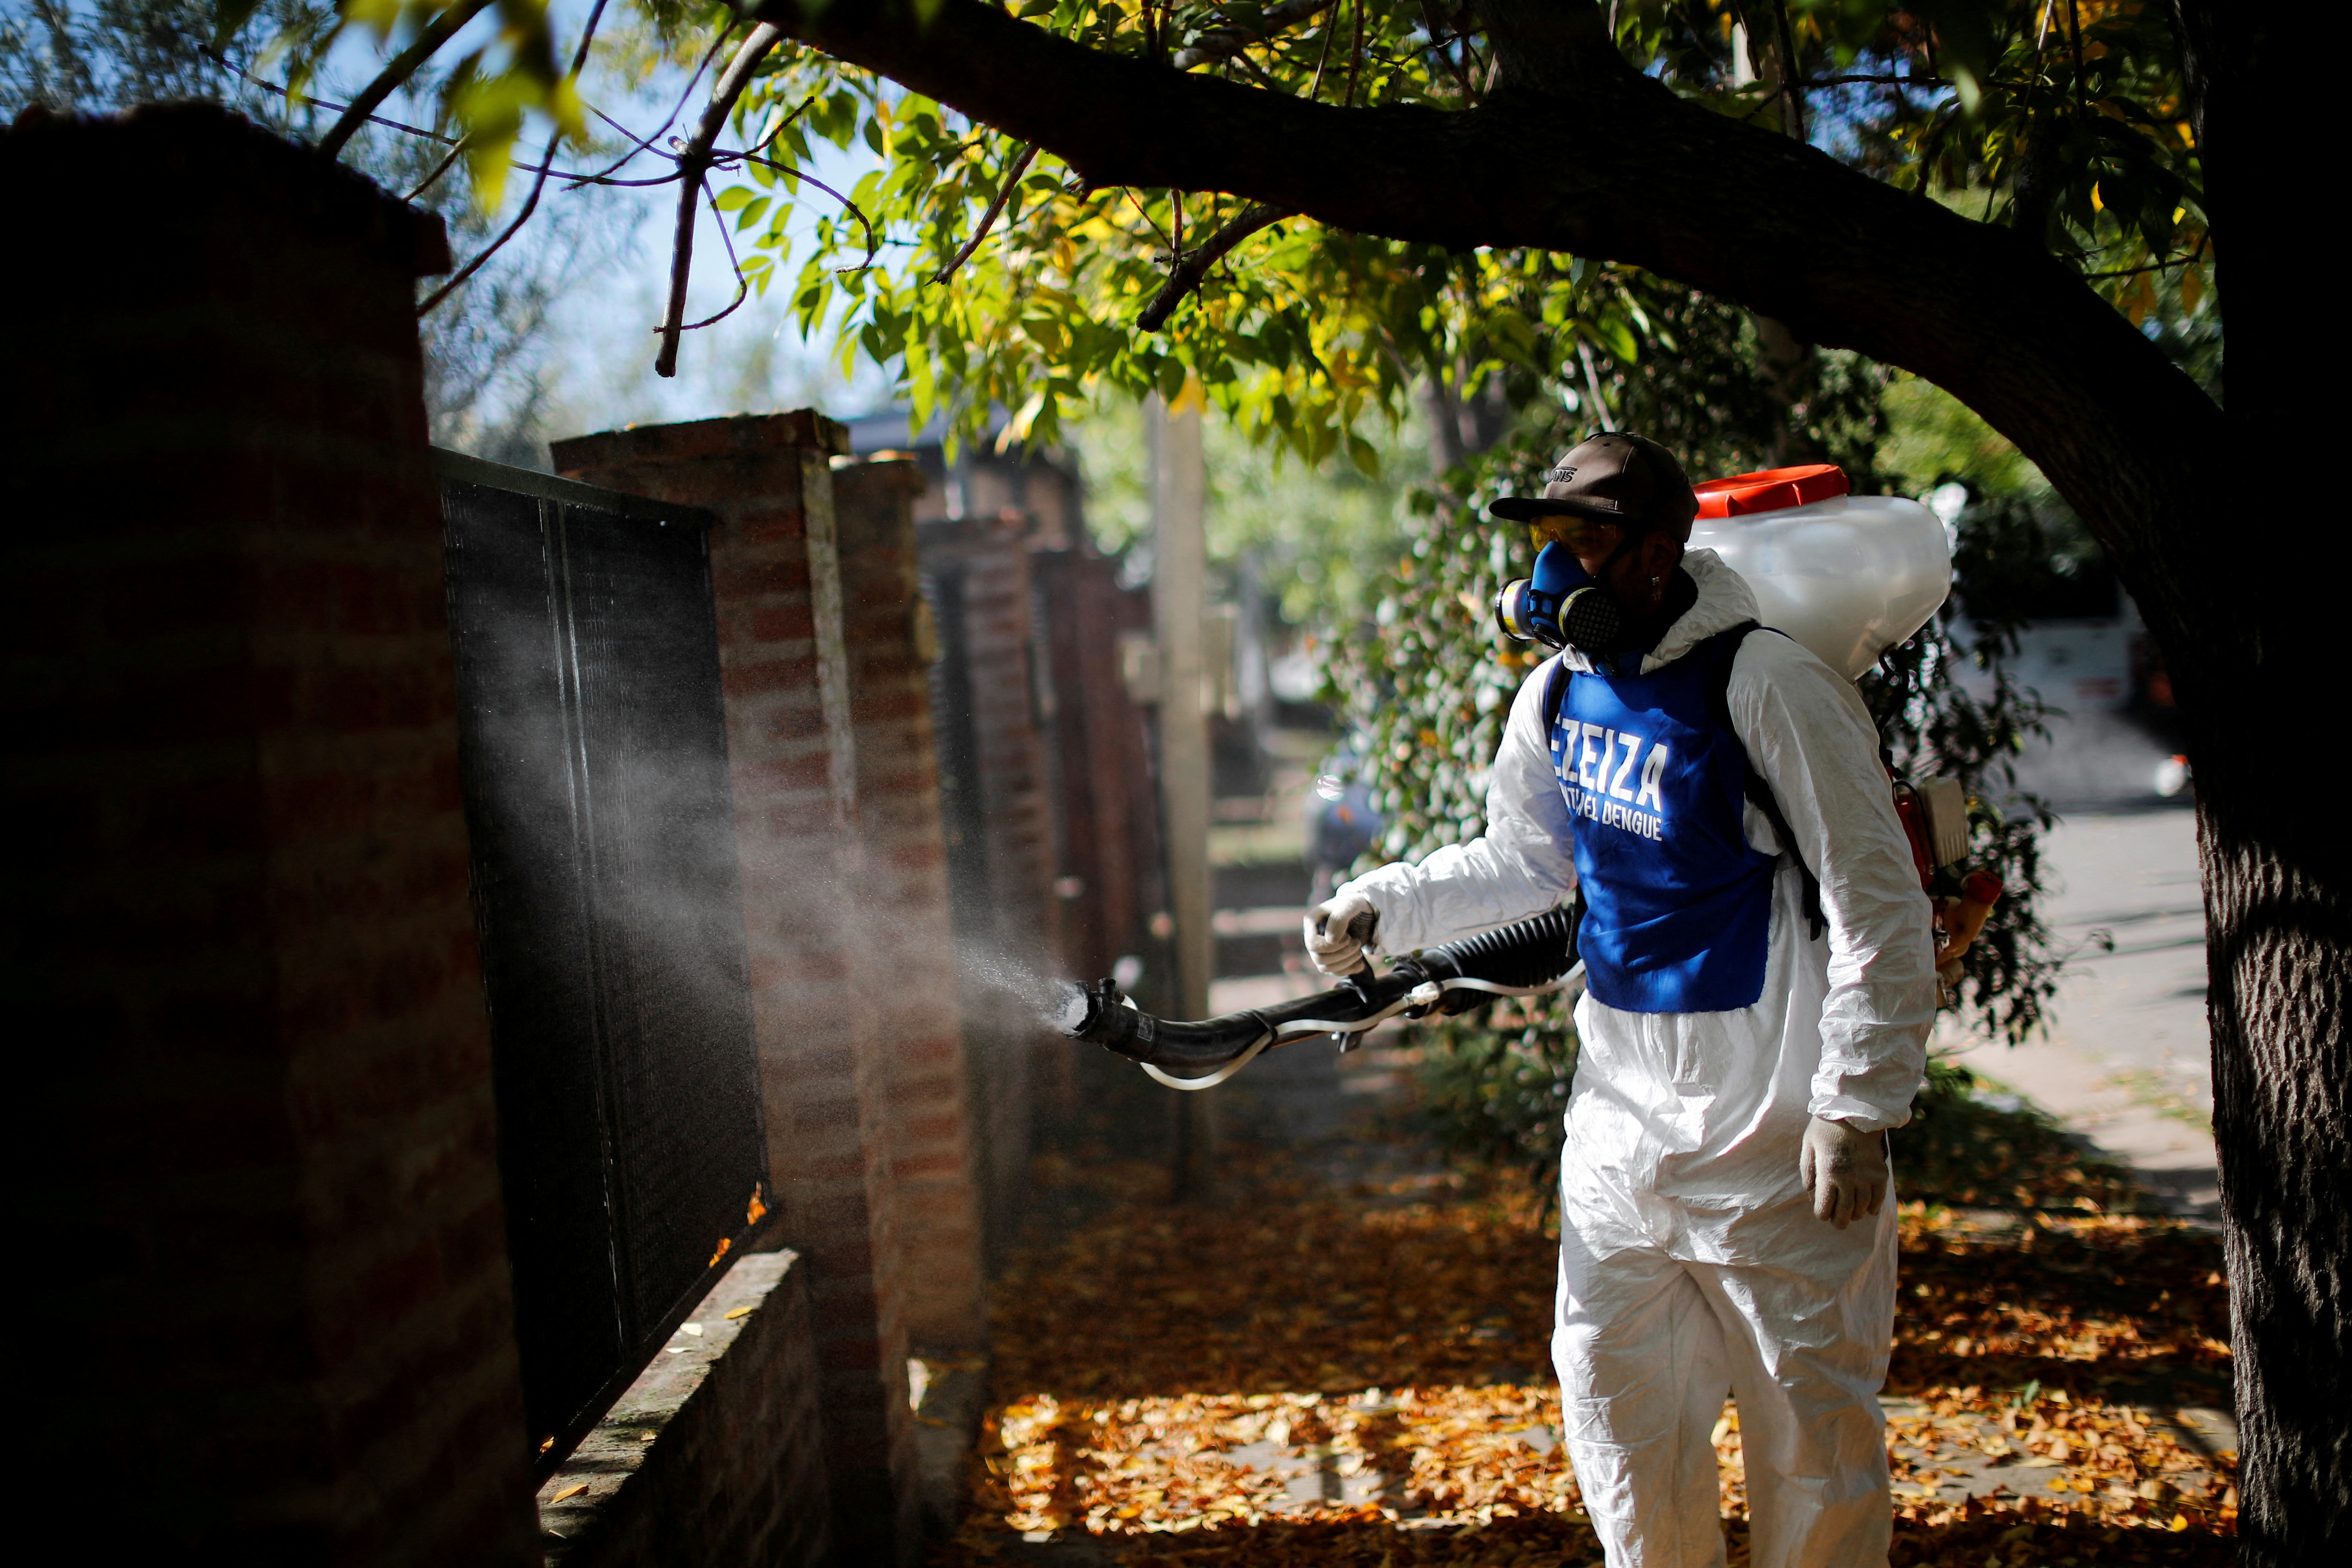 El contagio del dengue solo se produce por la picadura de los mosquitos infectados. No se produce entre personas (REUTERS/Agustin Marcarian/File Photo)